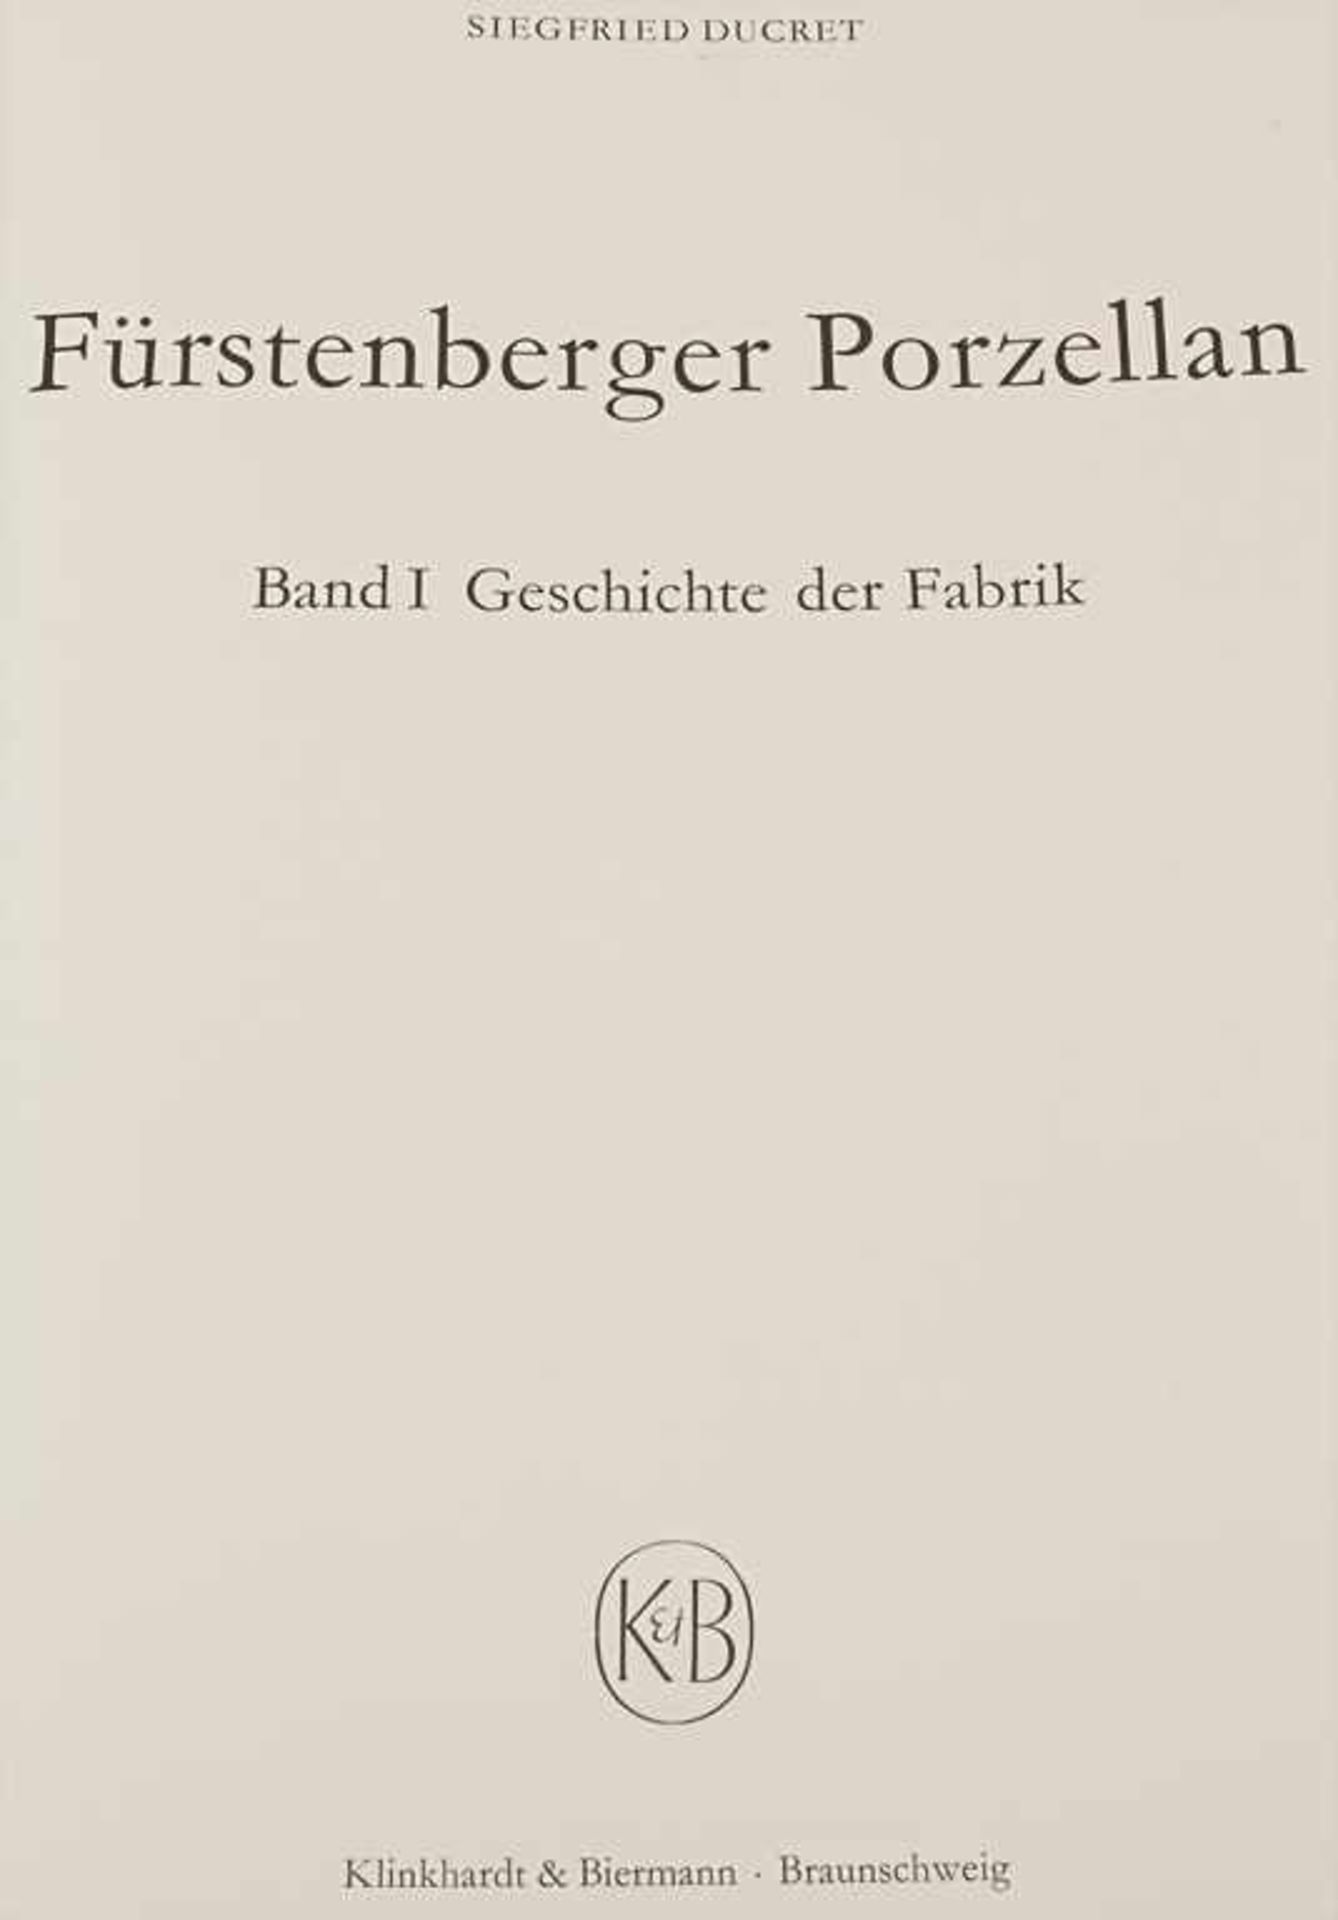 Ducret, Siegfried: Fürstenberger PorzellanTitel: Fürstenberger Porzellan. 3 Bde.Verlag: Braunschweig - Image 3 of 9